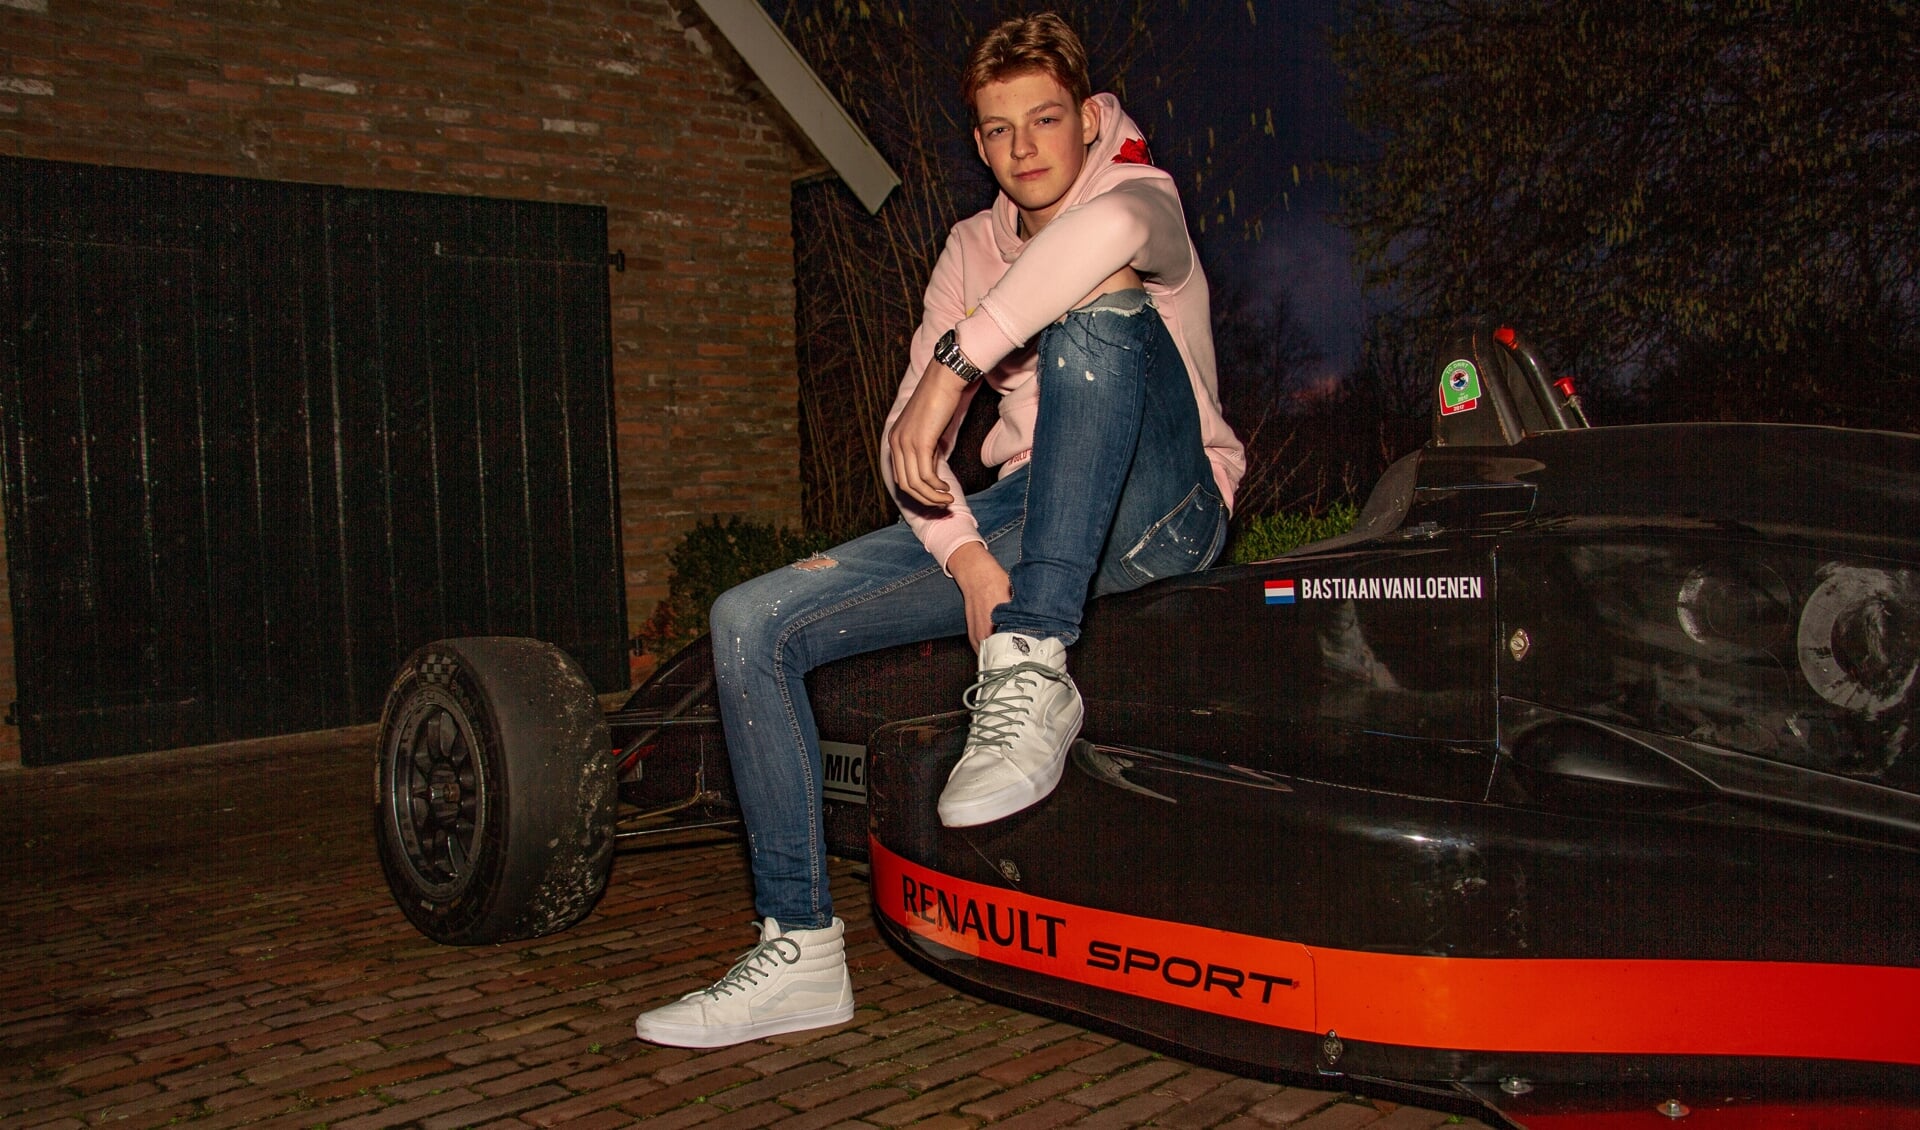 Jong racetalent Bastiaan van Loenen start 2020 in de Formule Renault. Foto: Liesbeth Spaansen